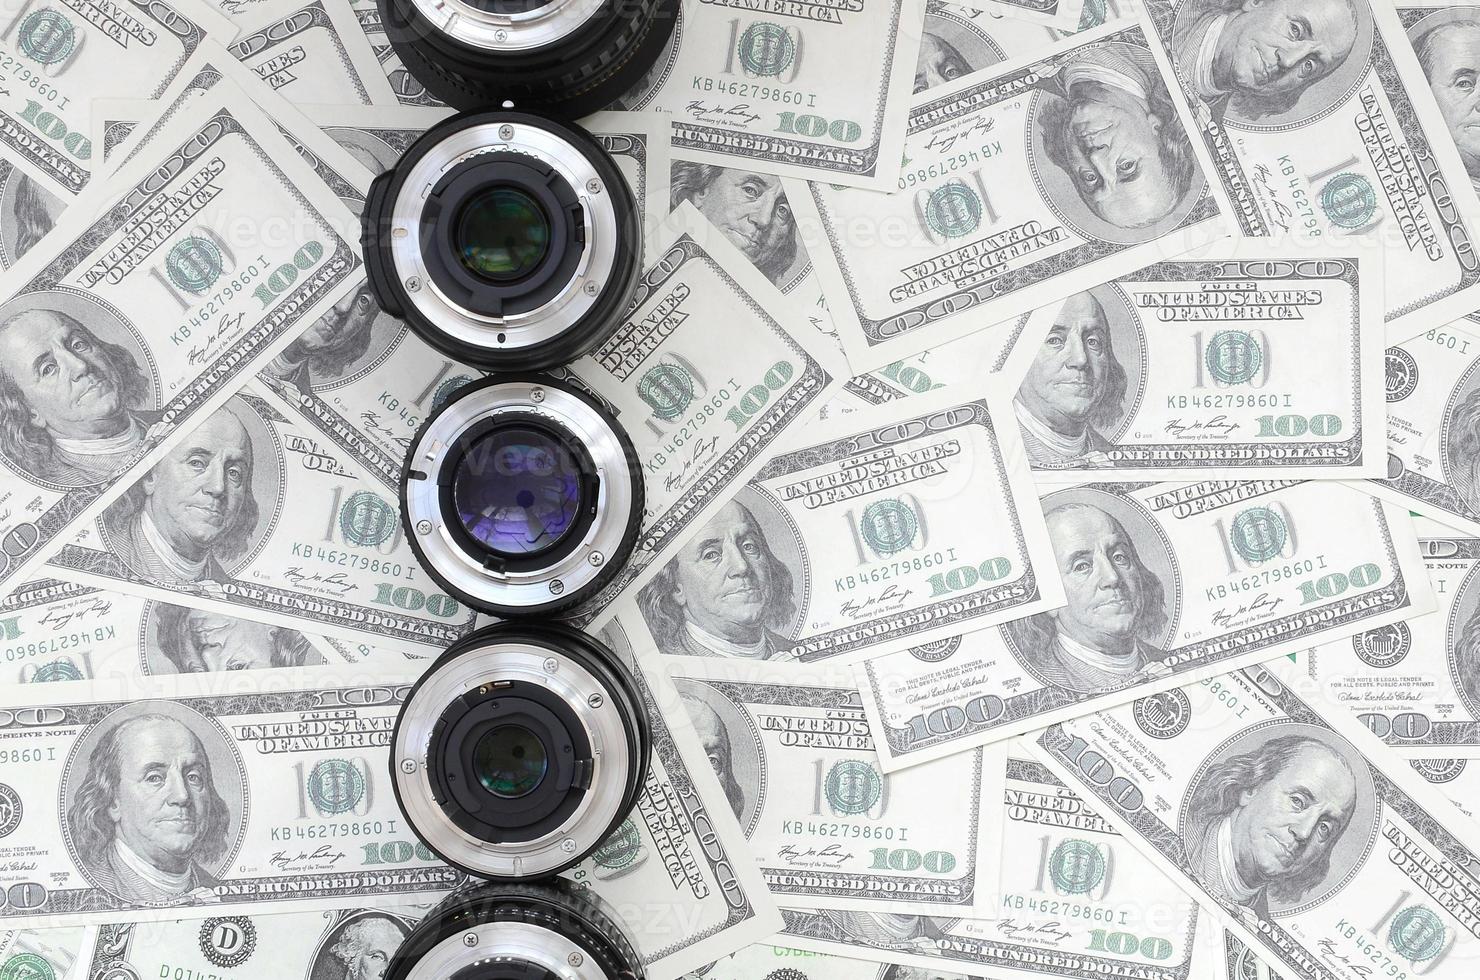 algumas lentes fotográficas estão no fundo de muitas notas de dólar. espaço para texto foto